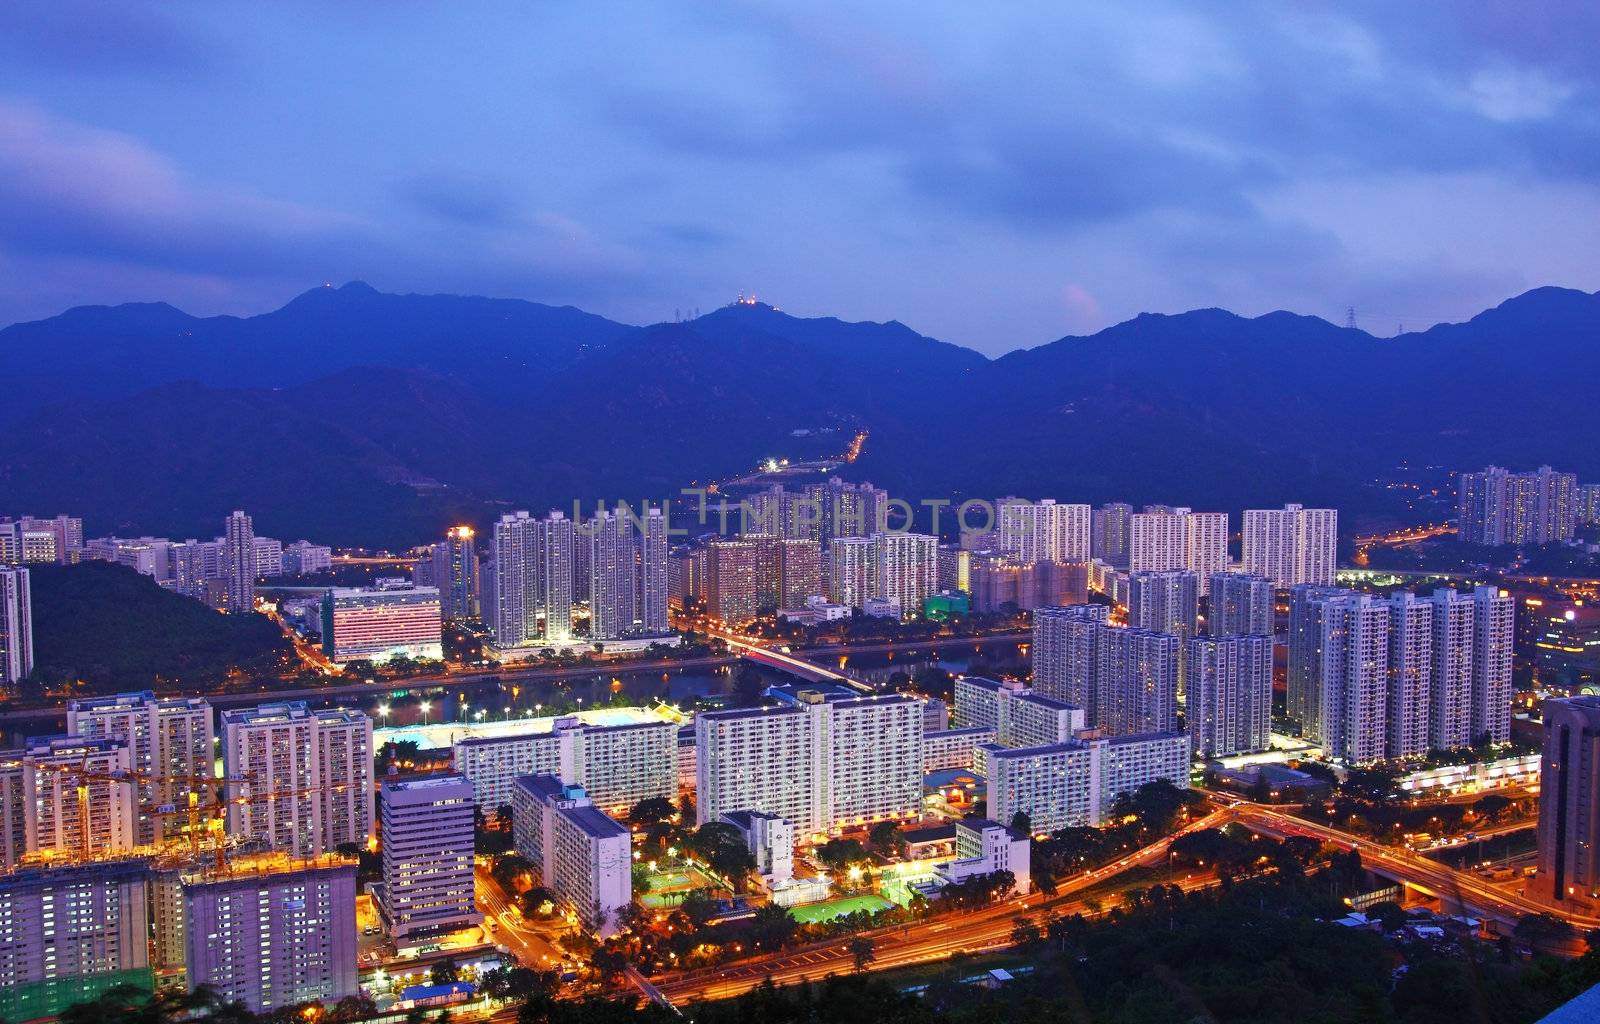 Hong Kong apartments at night